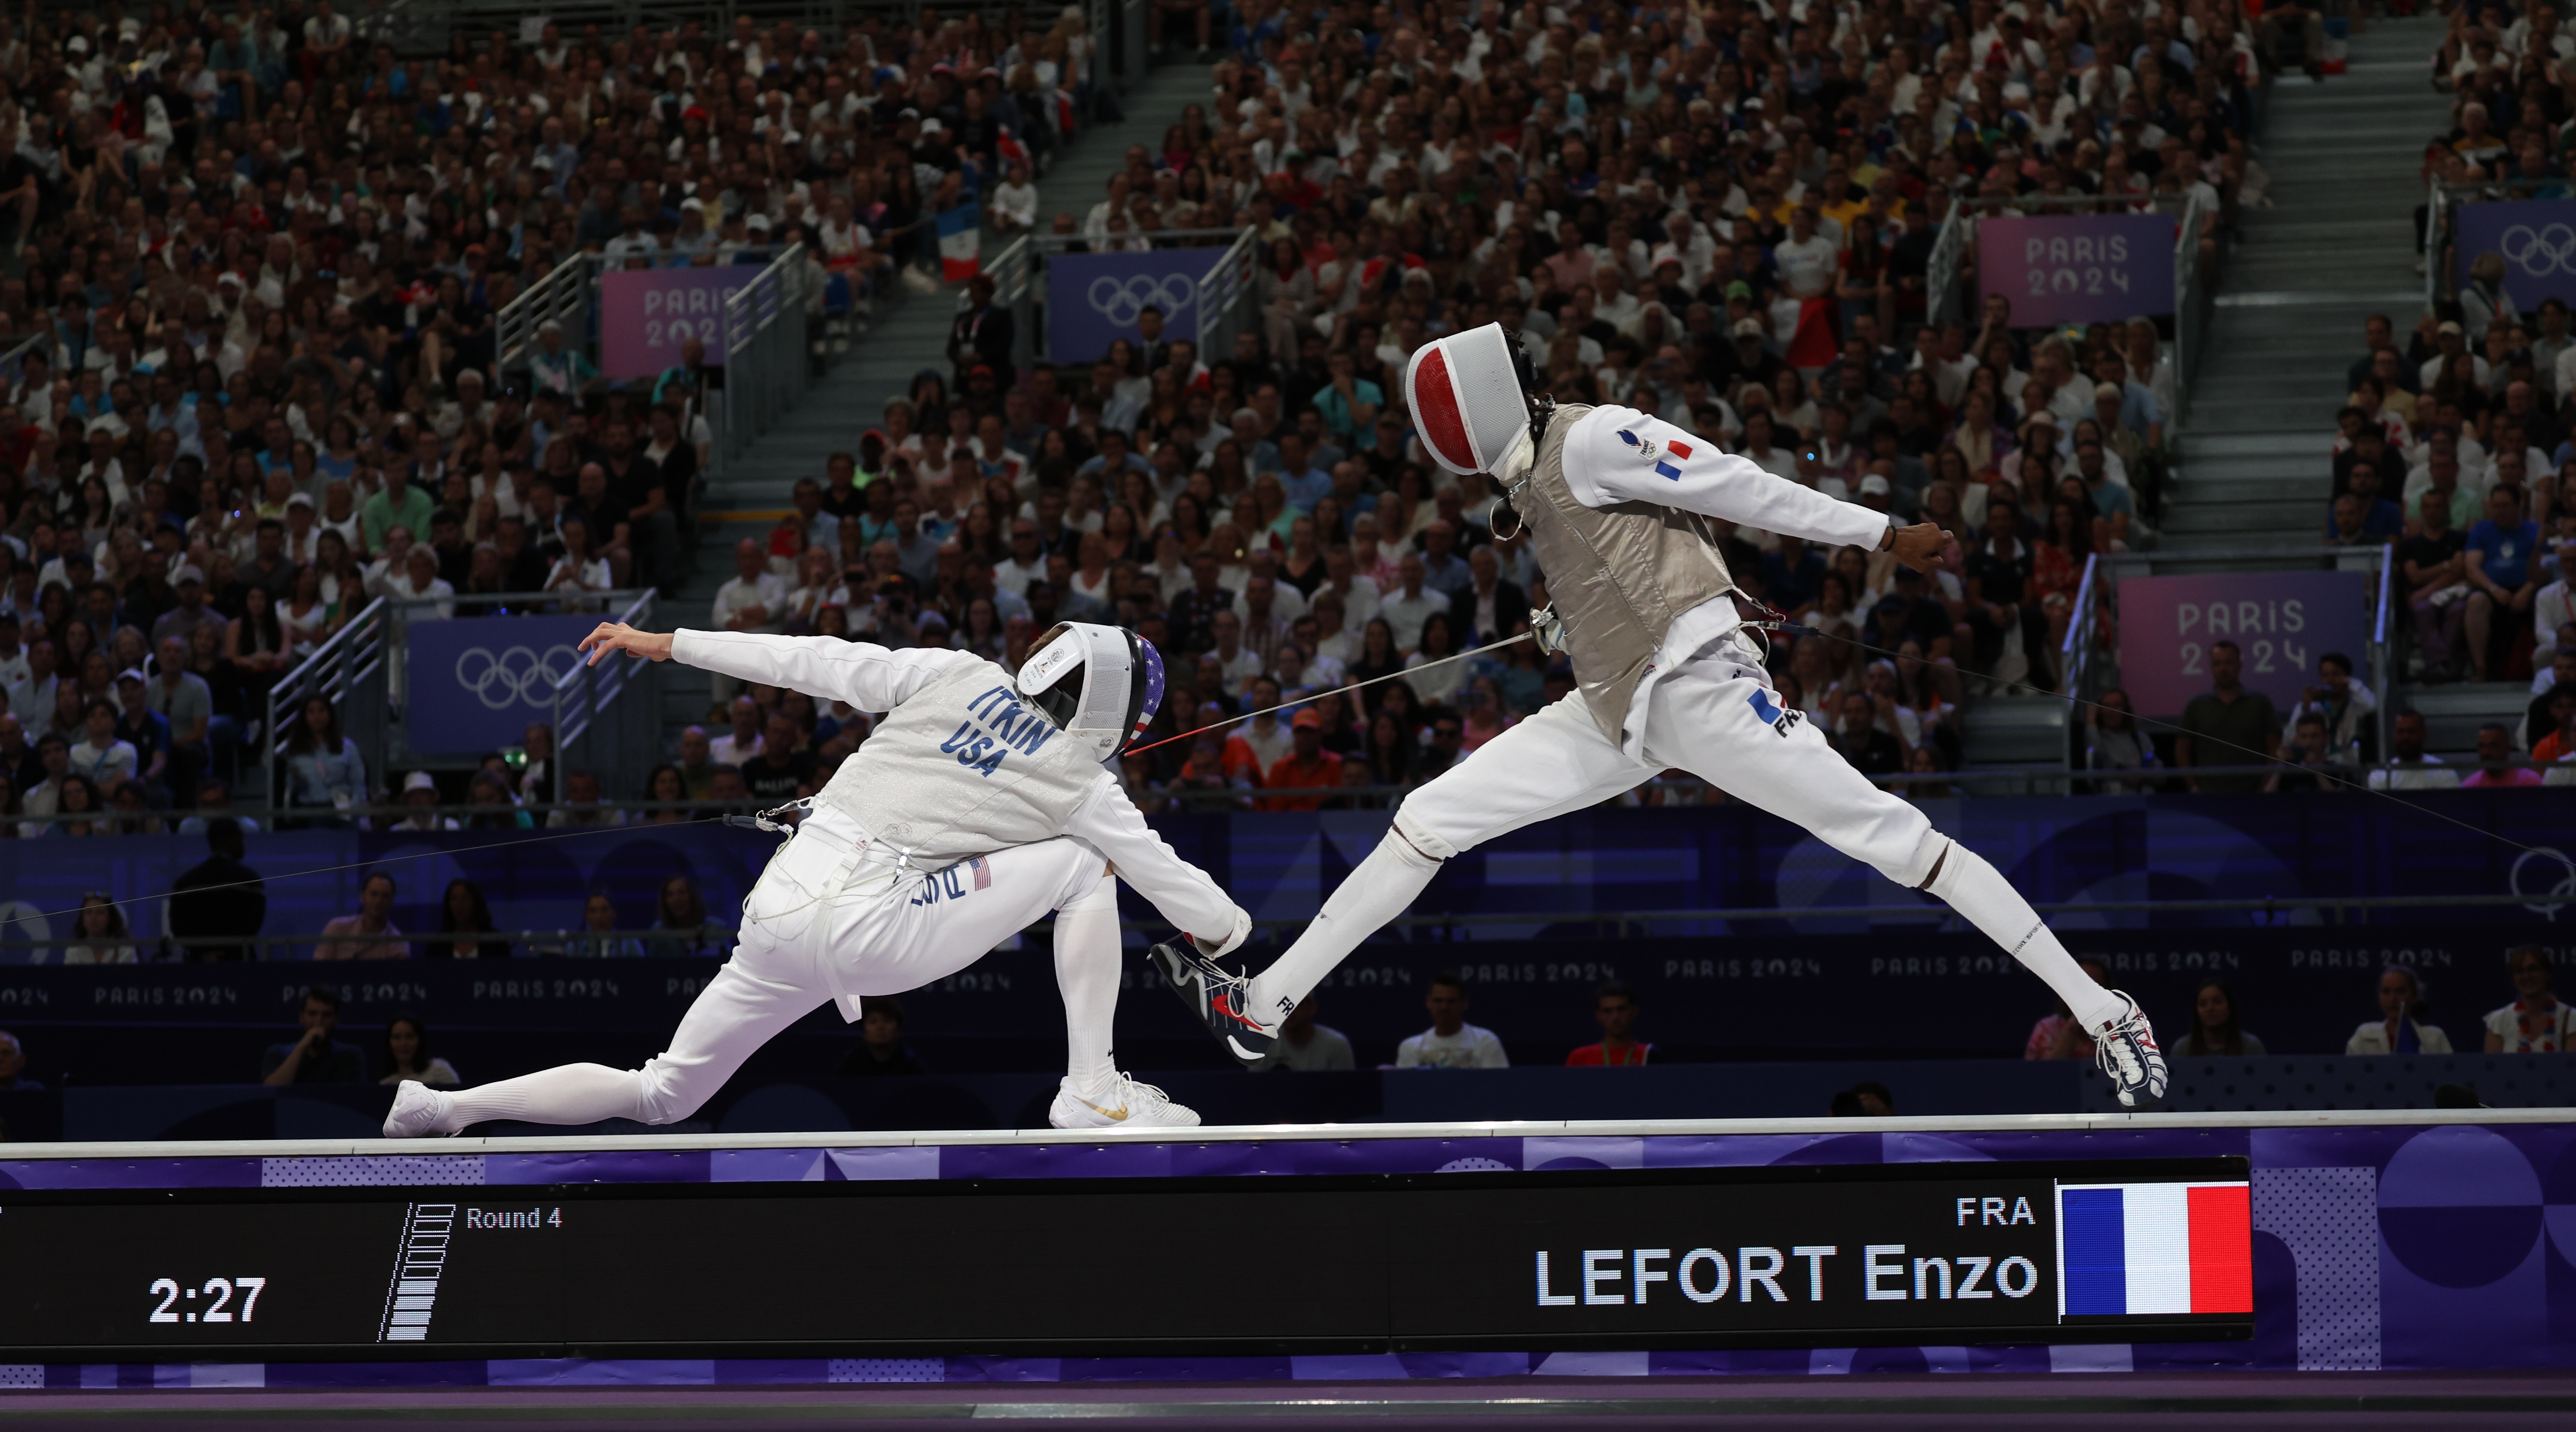     JO 2024 : Enzo Lefort en costaud prend le bronze avec la France au fleuret !!!

